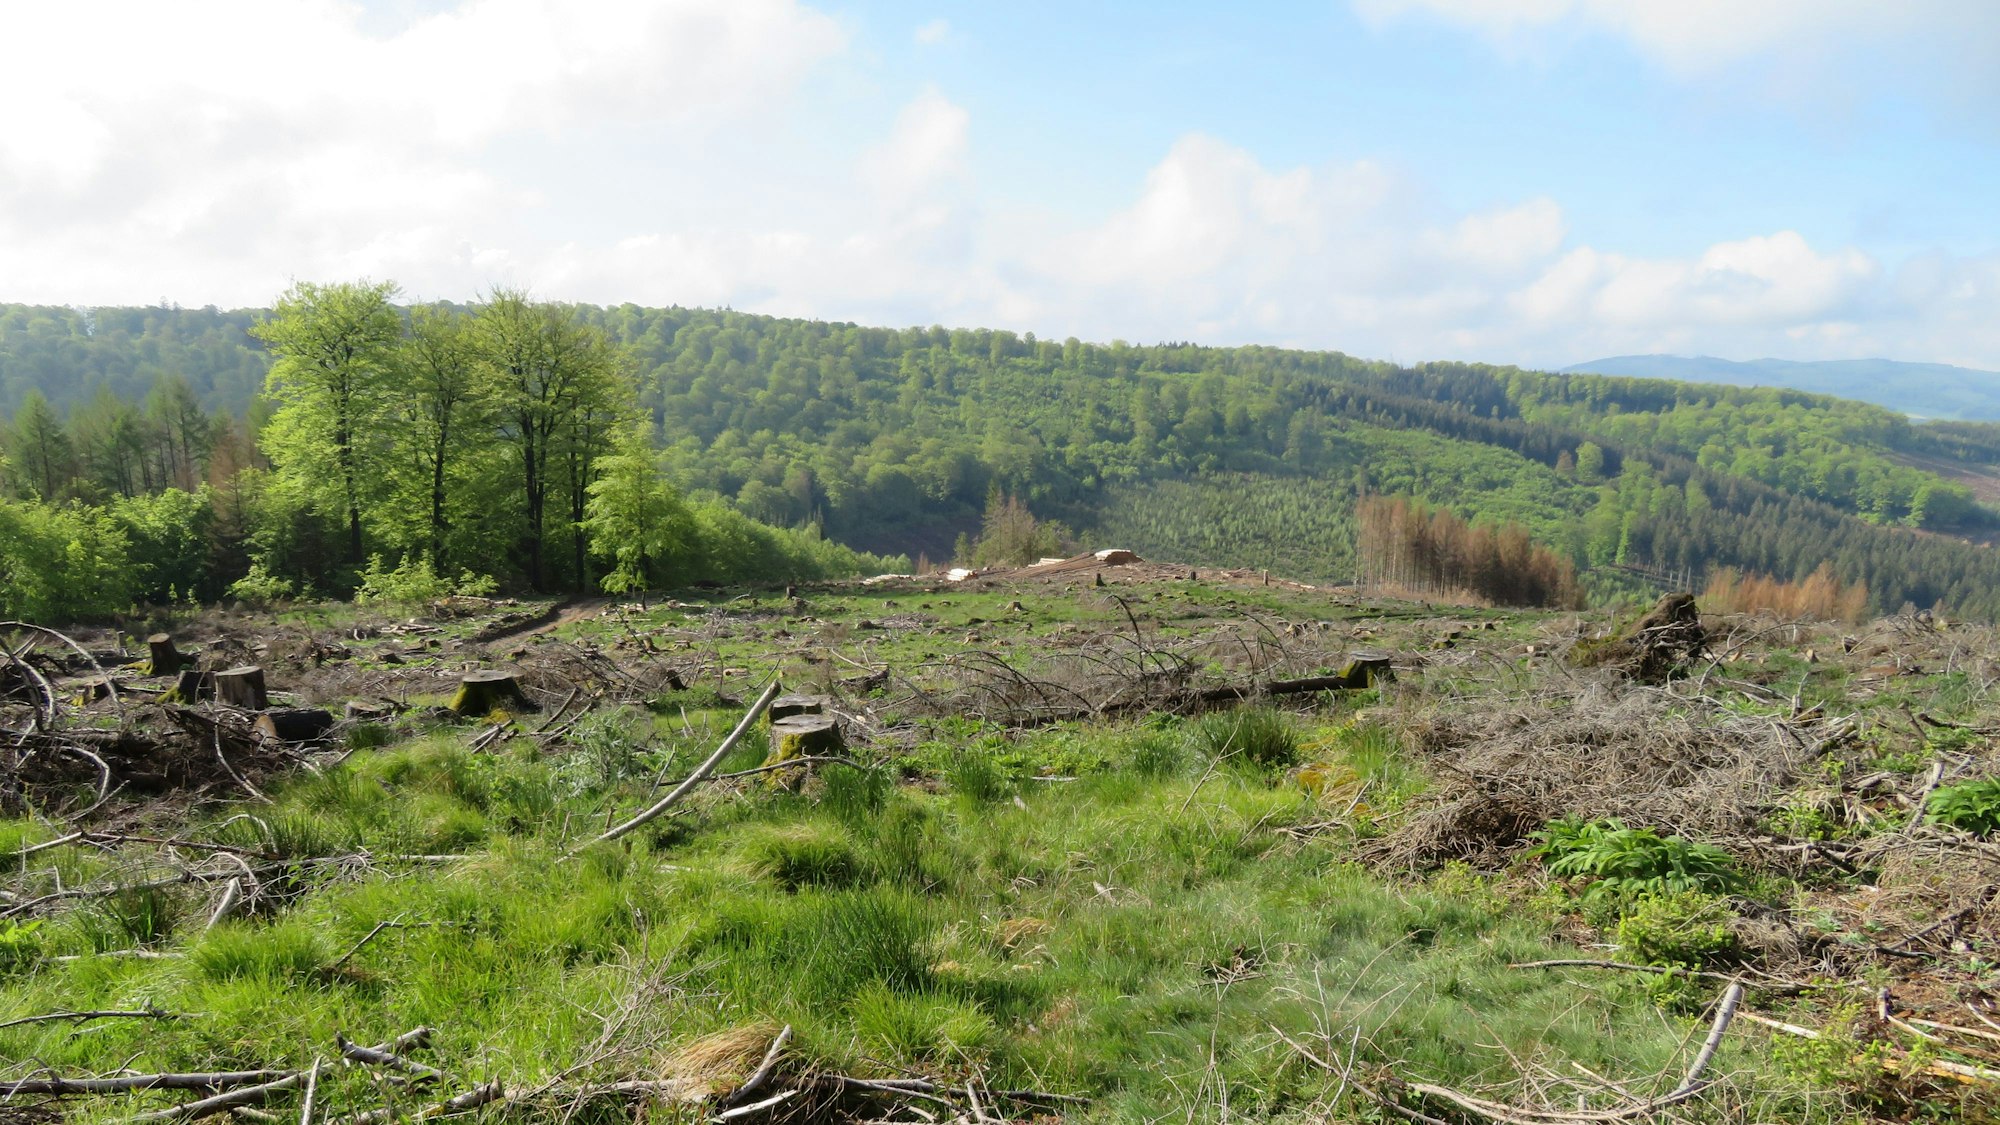 Das Fichtensterben im Arnsberger Wald hat das Landschaftsbild zunehmend verändert.